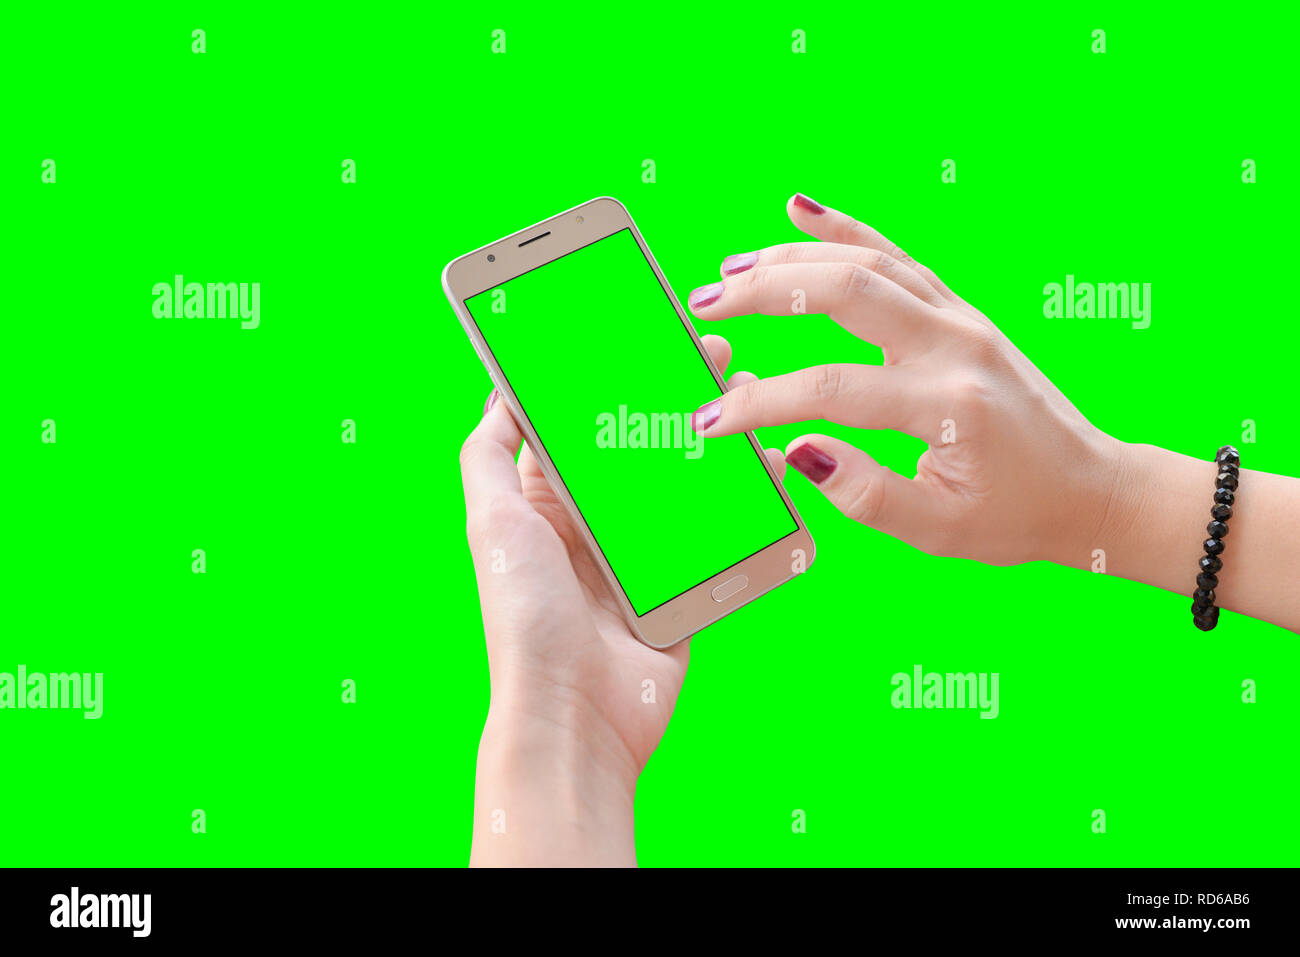 Touchez l'écran du téléphone intelligent à la main. Chroma key vert isolé. Femme mains. Banque D'Images